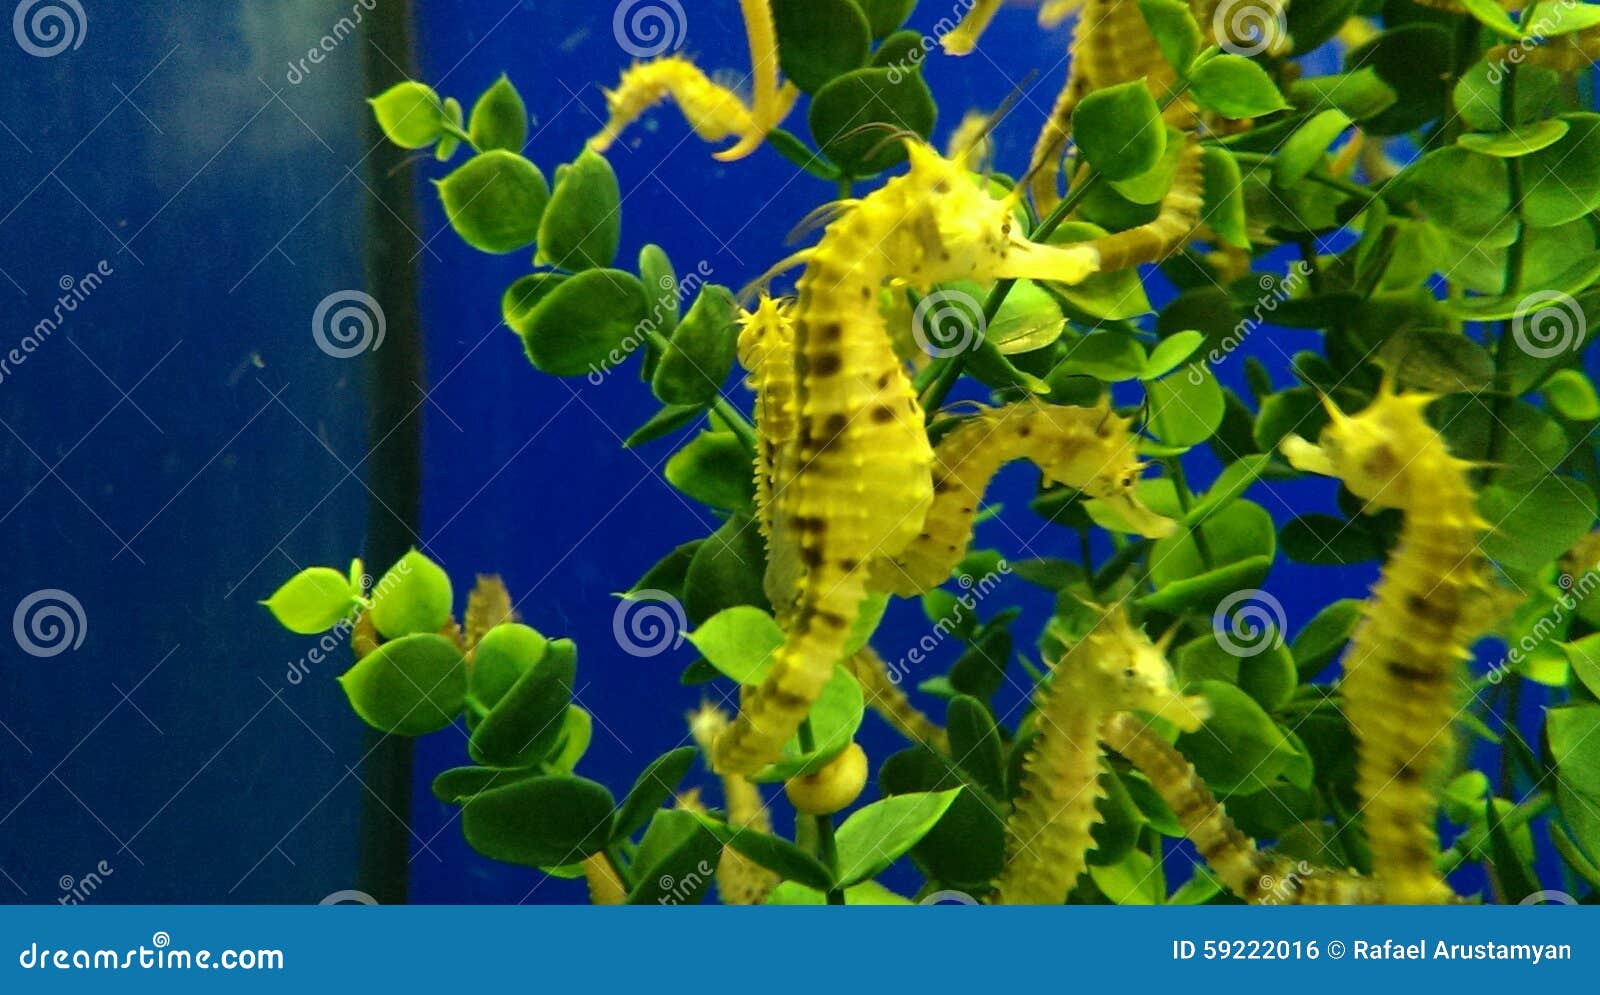 Sea horses in aquarium